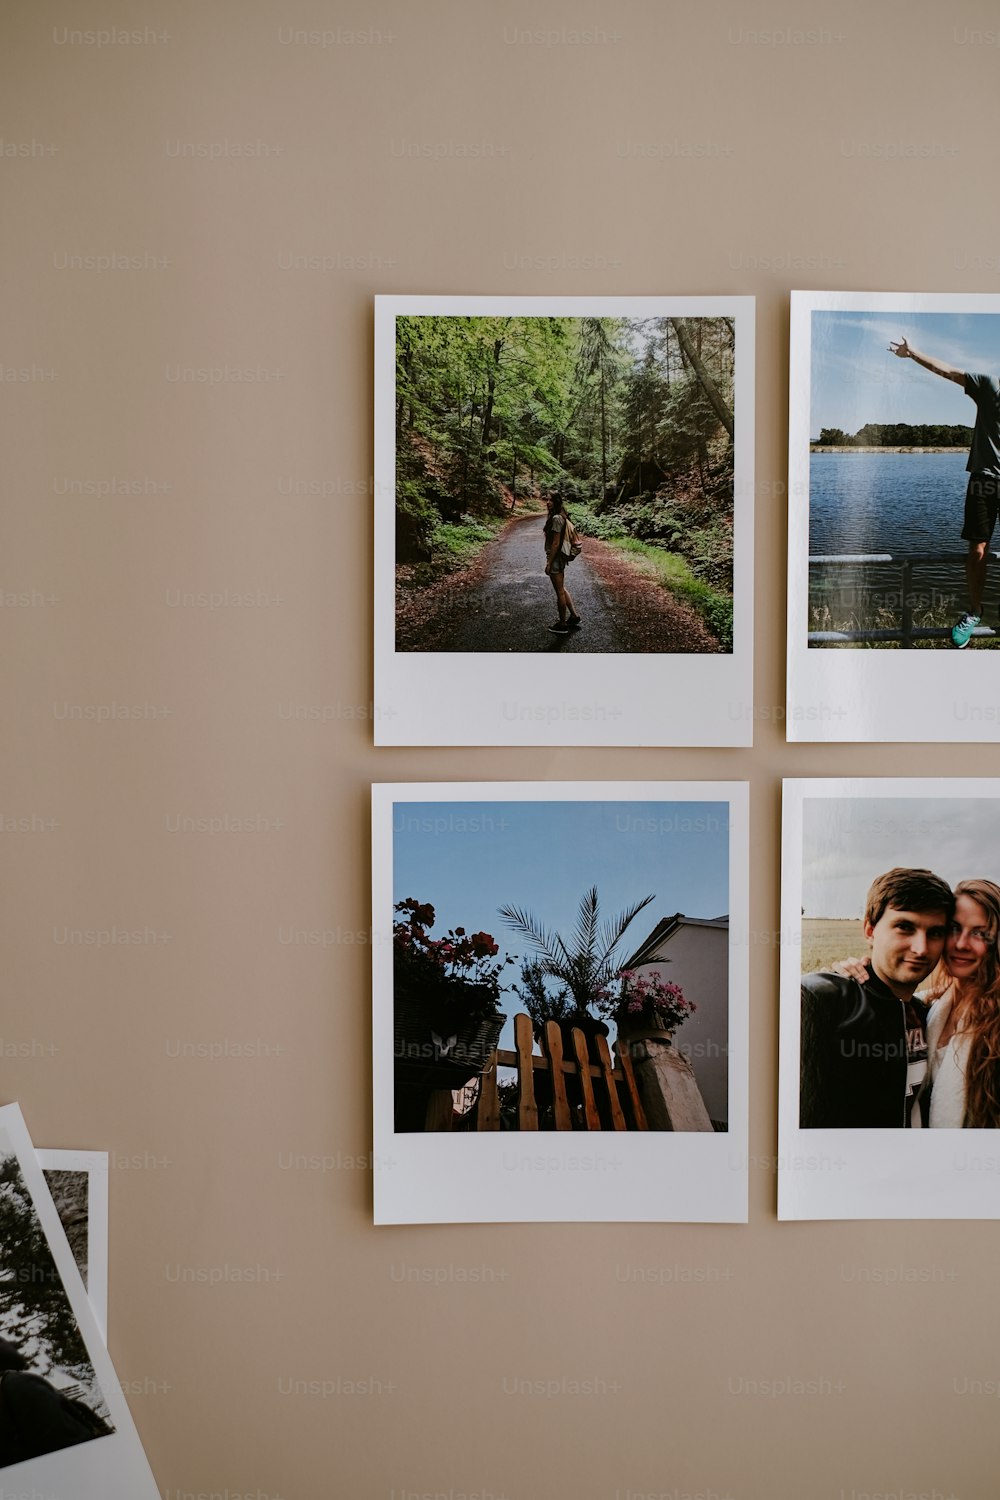 Cuatro fotos Polaroid colgadas en una pared